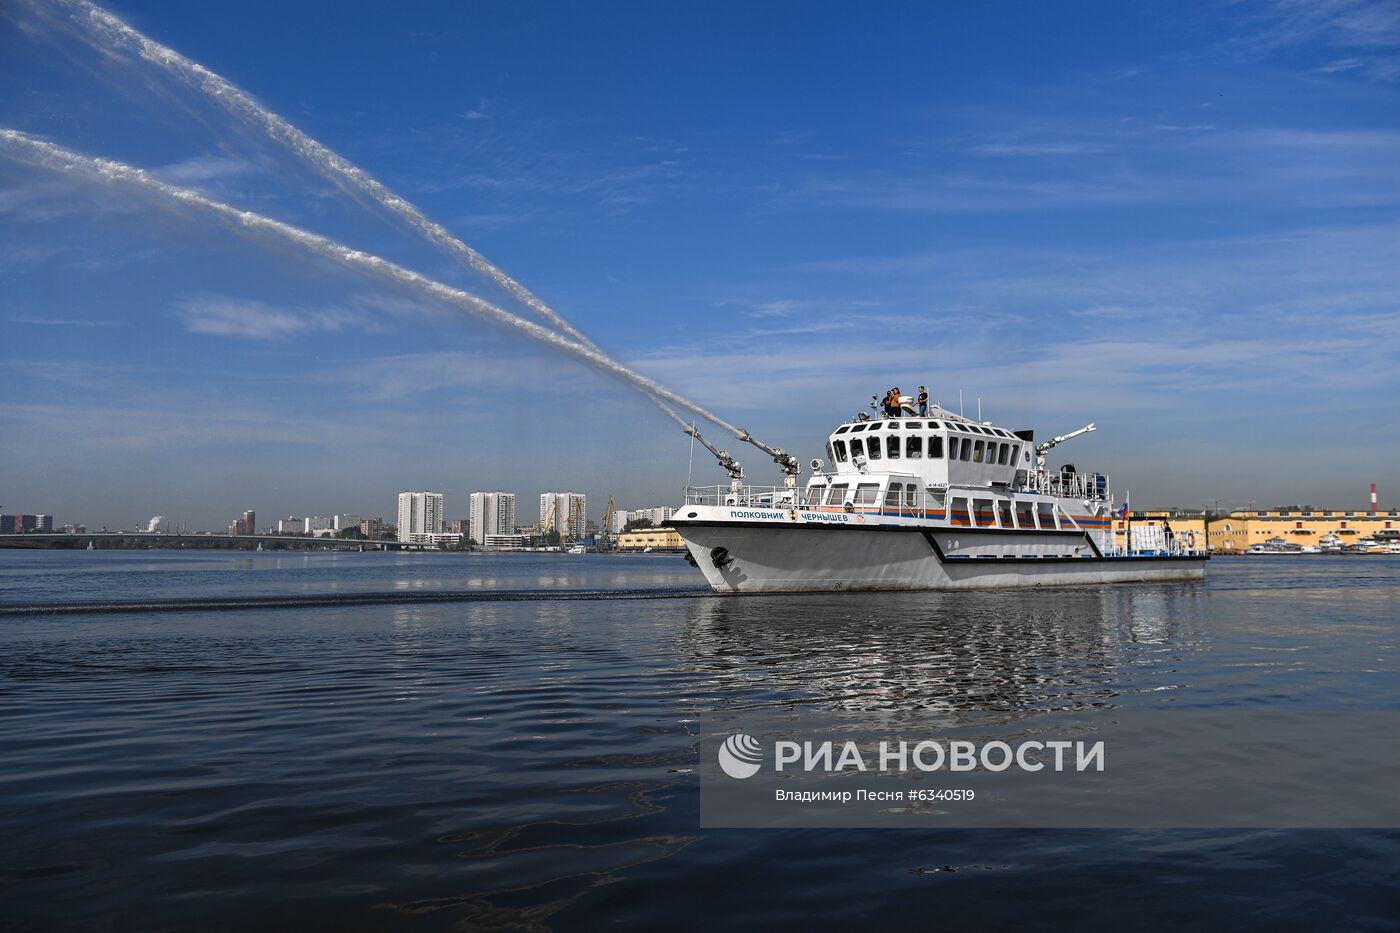 Пожарно-спасательный корабль "Полковник Чернышев"